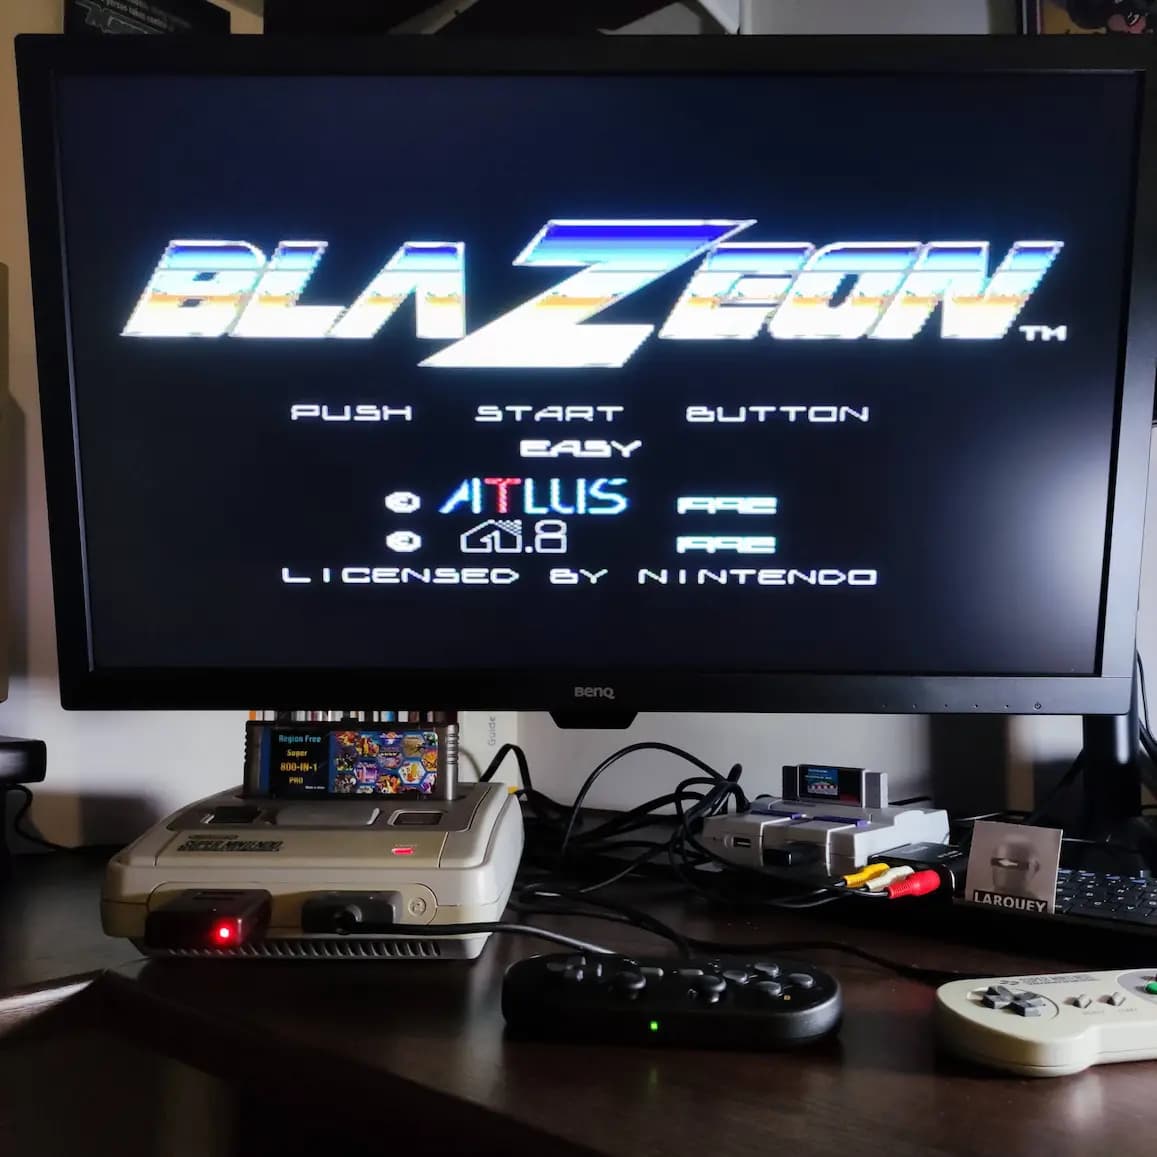 Larquey: Blazeon [Easy] (SNES/Super Famicom) 191,800 points on 2022-08-09 04:44:52